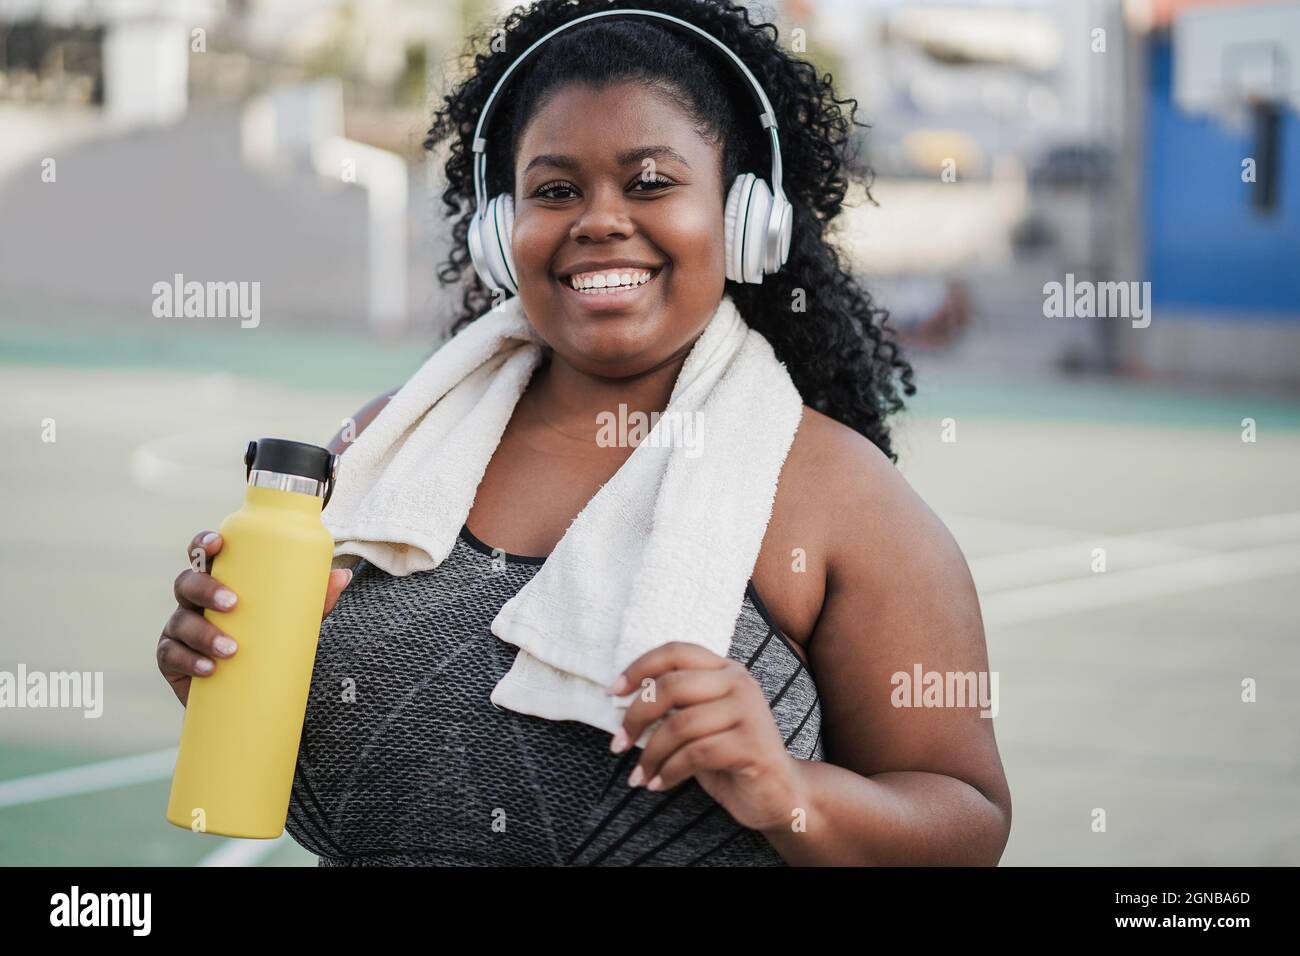 Sport kurvige schwarze Frau Musik hören mit Kopfhörern - Fokus auf Gesicht Stockfoto